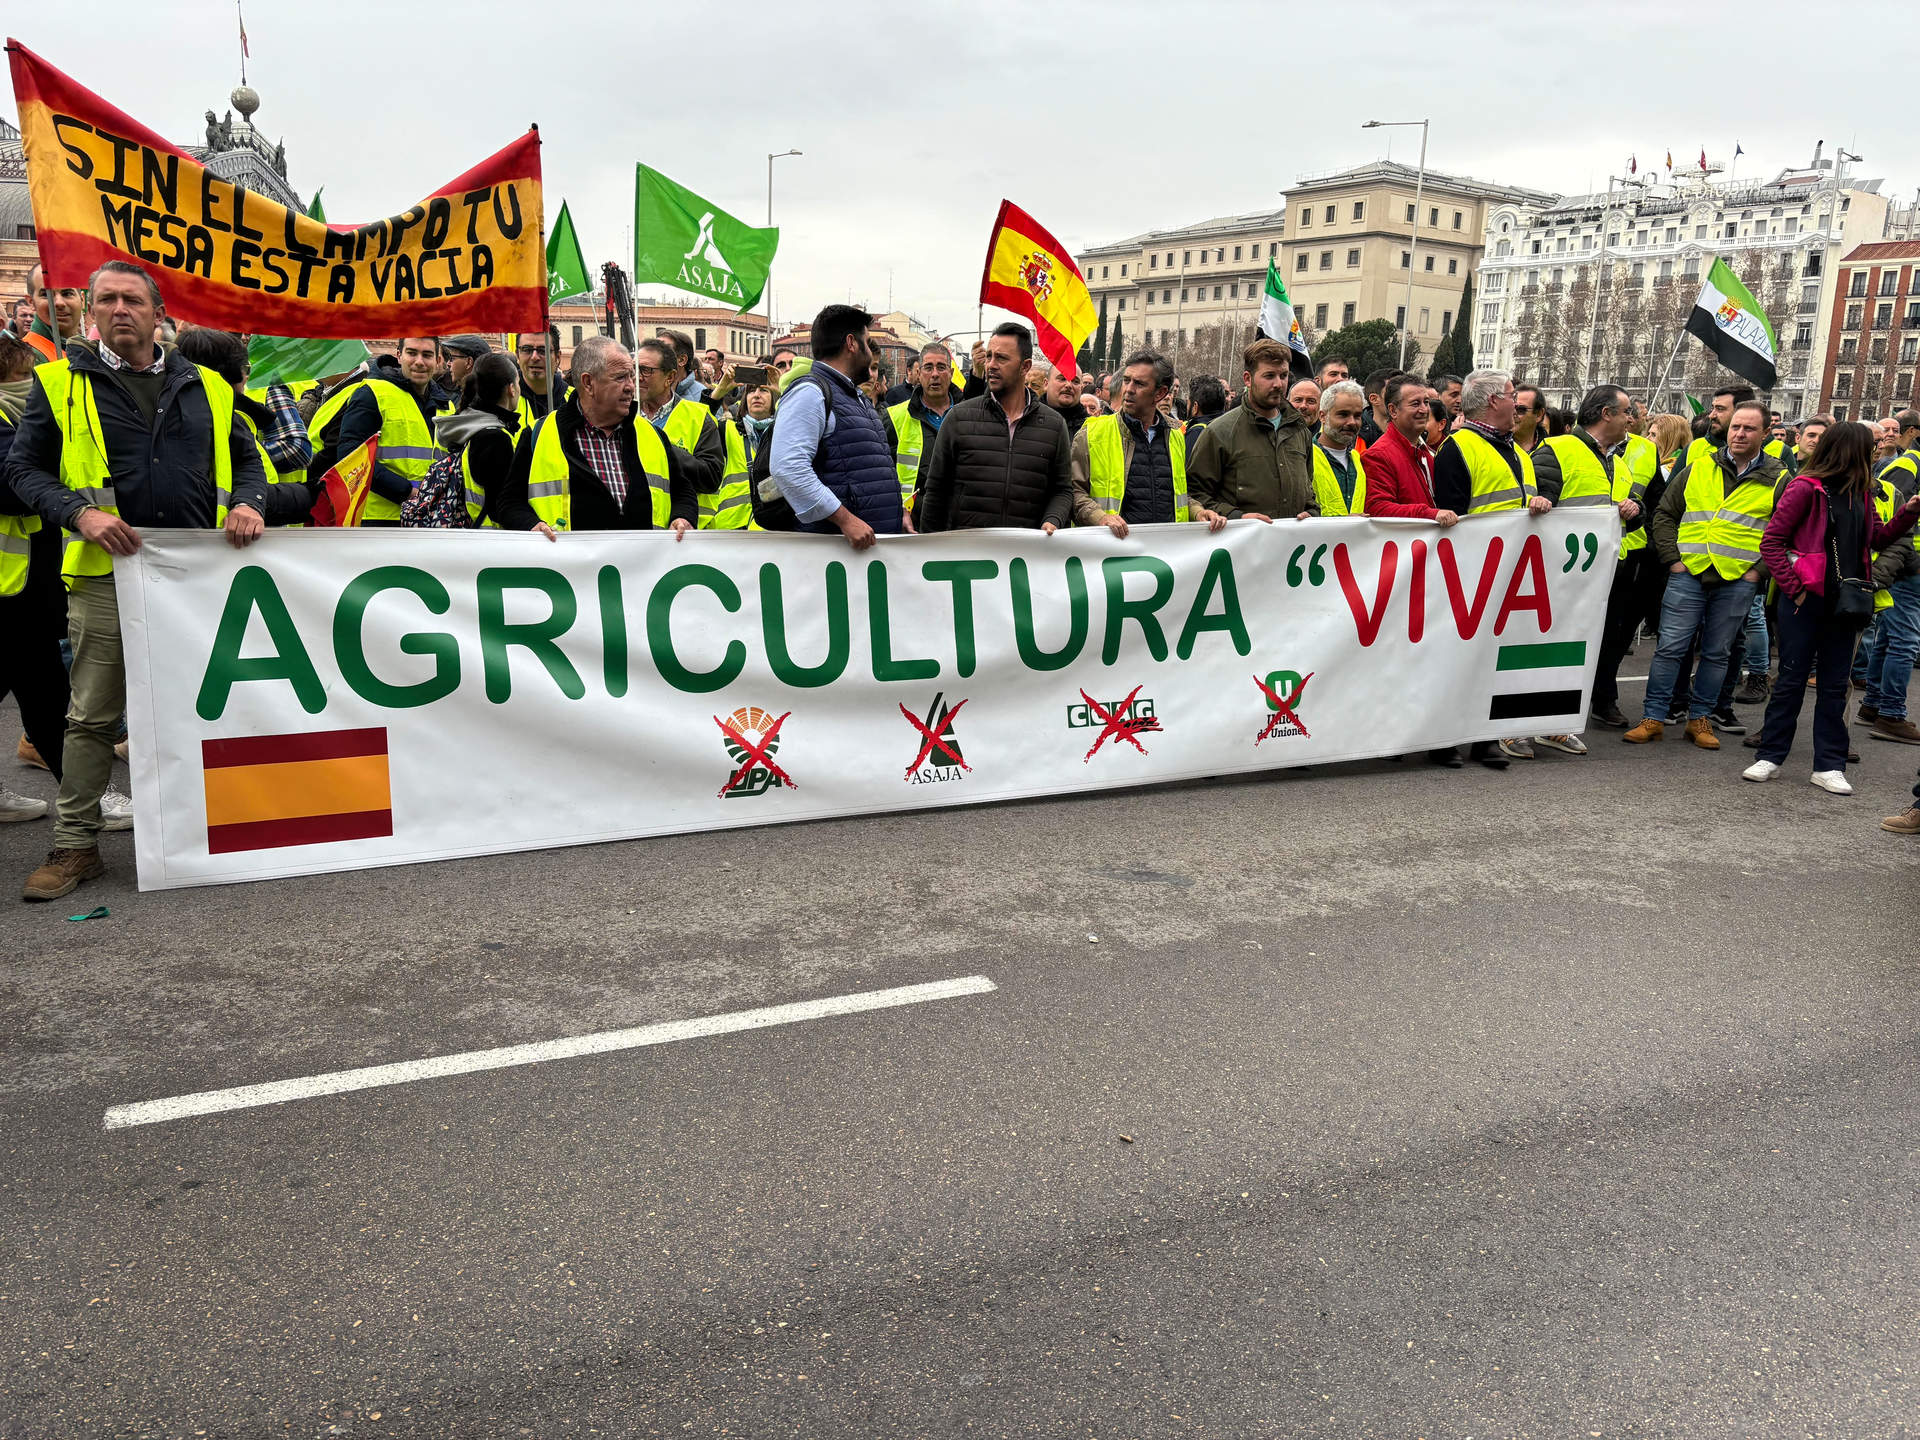 Una de las pancartas de la manifestación que dice Agricultura "Viva"